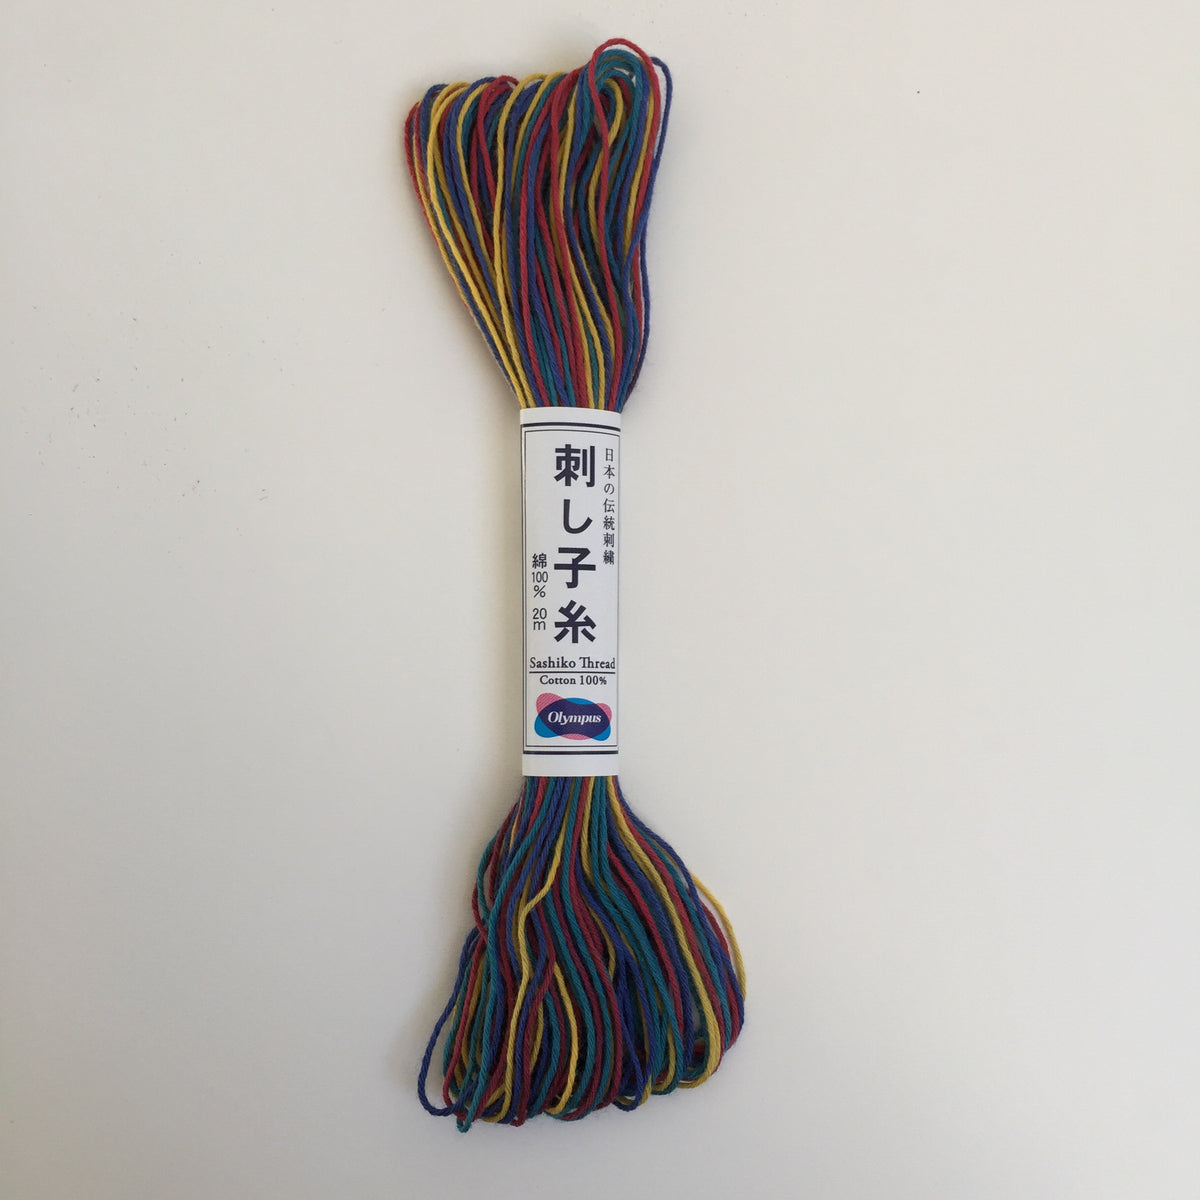 Olympus Japanese Sashiko Thread - 20m - Variegated Rainbow (#74)